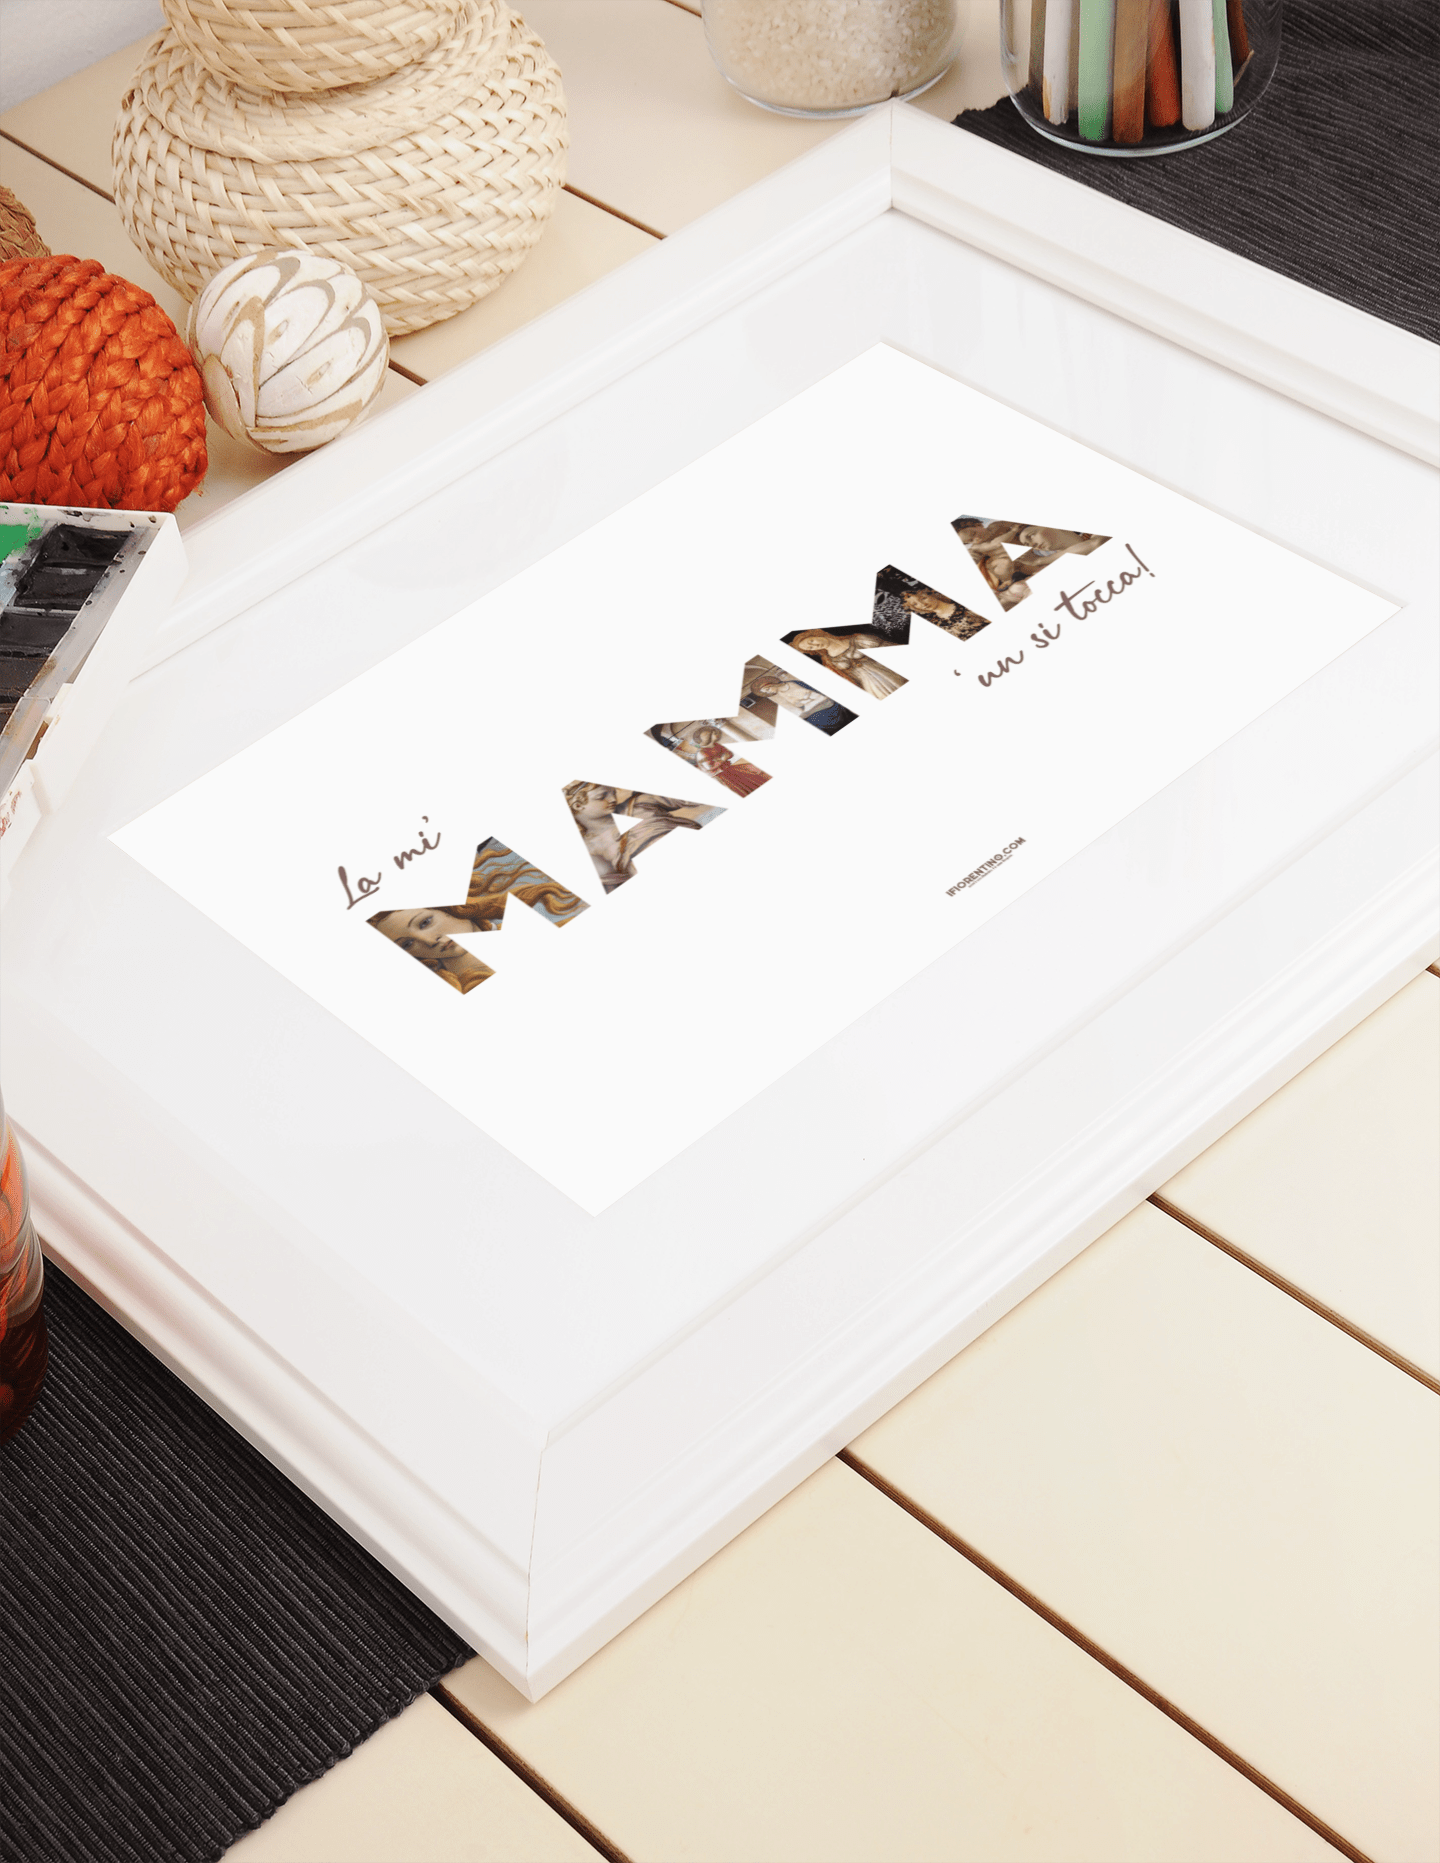 LA MI' MAMMA 'un si tocca // l'è la meglio - poster fiorentini - poster firenze - regalo fiorentino - fiorentino  - foppeddittelo